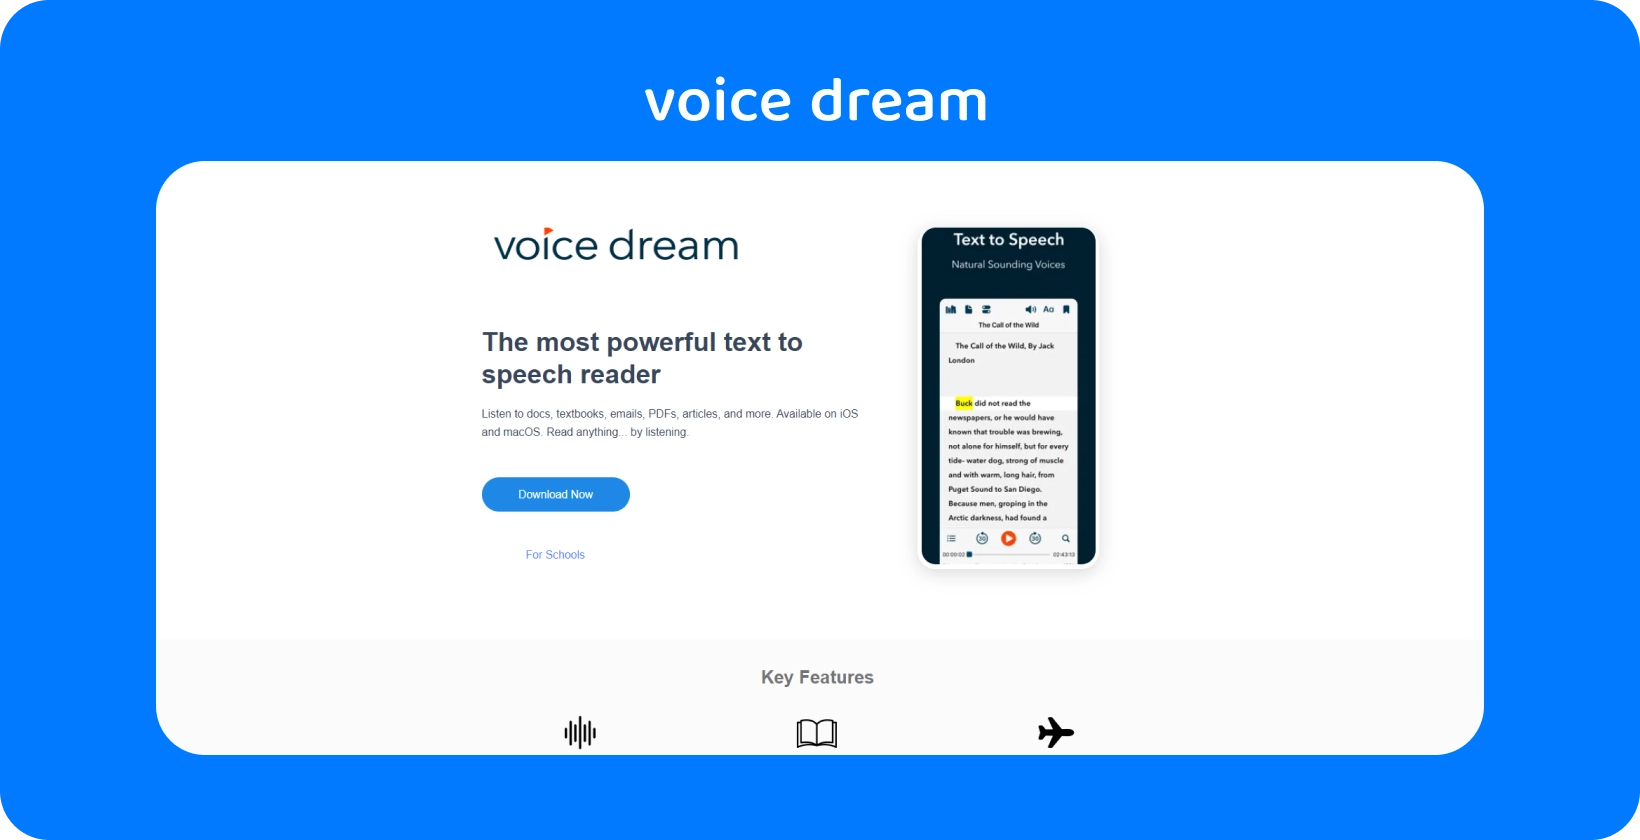 "Voice Dream" programos sąsaja, demonstruojanti galingą teksto į kalbą skaitytuvą, skirtą įvairiems dokumentams mobiliuosiuose įrenginiuose.